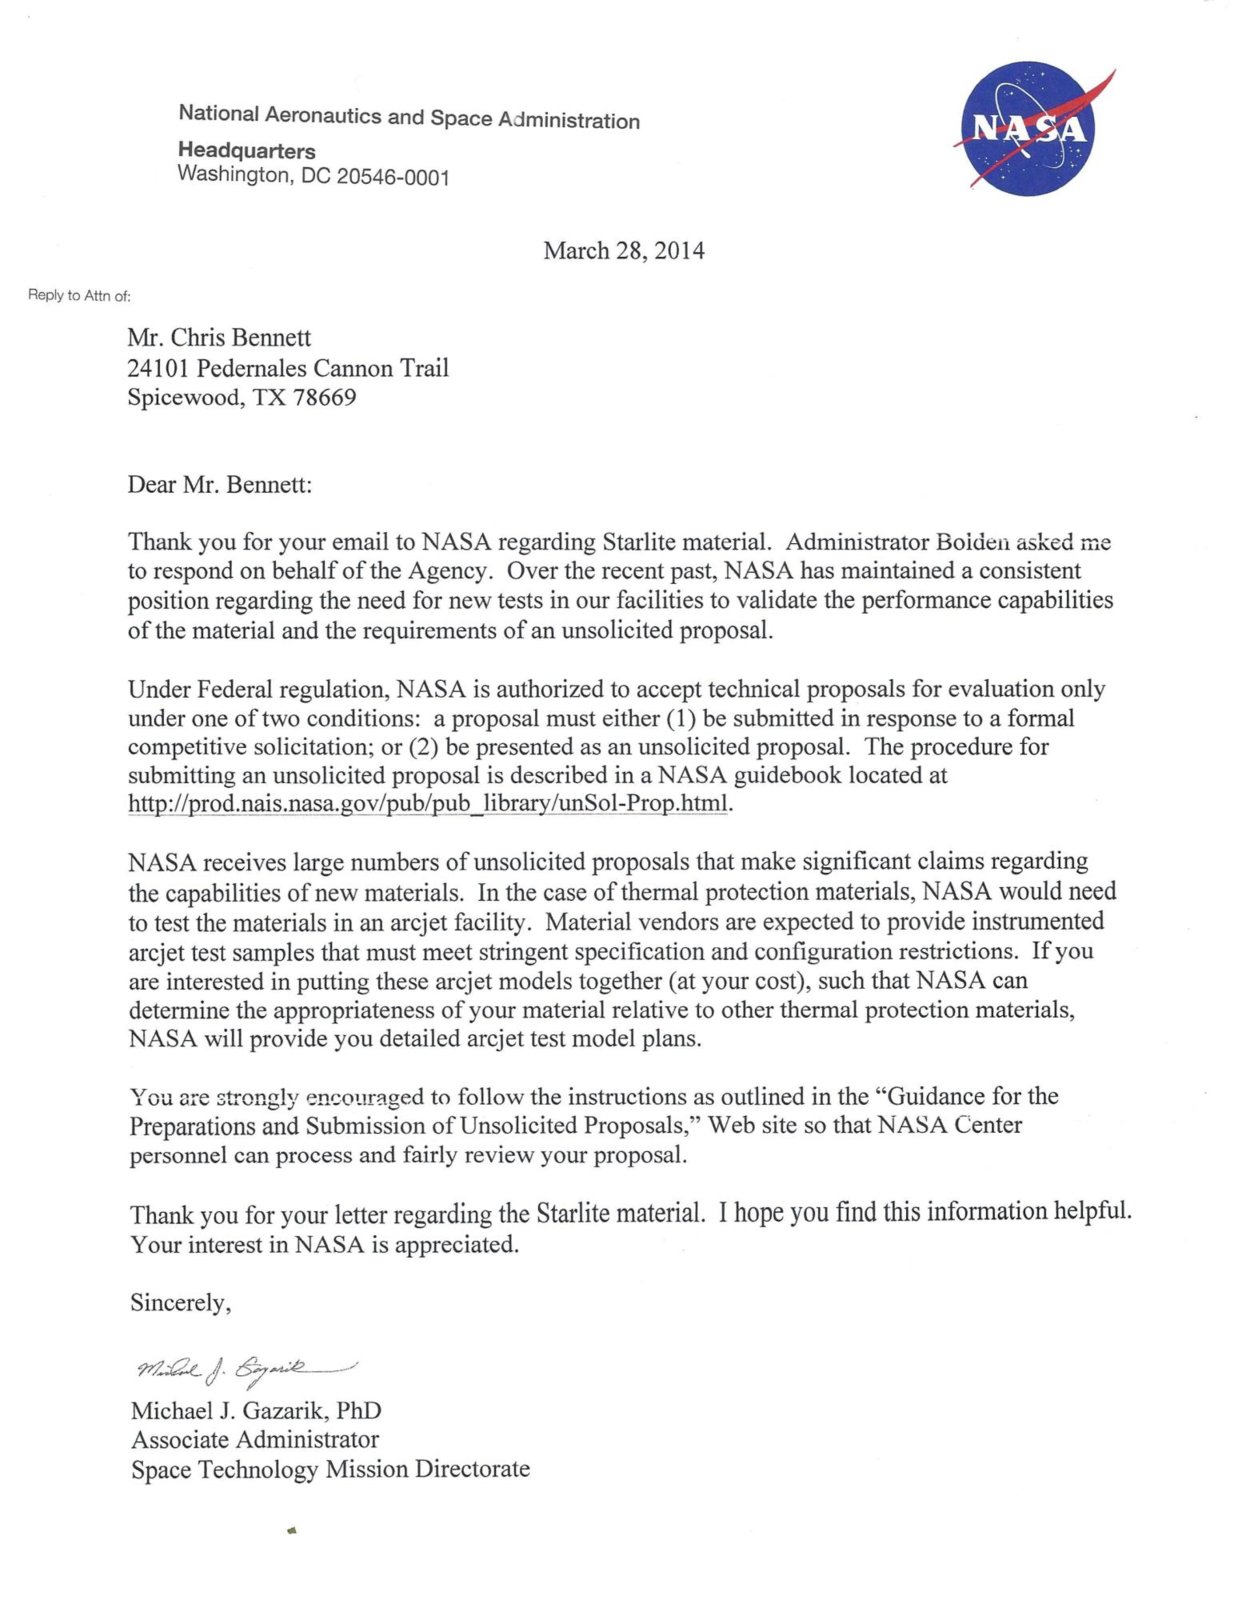 NASA-Bennett-Bolden-Response-Letter--2014.jpg